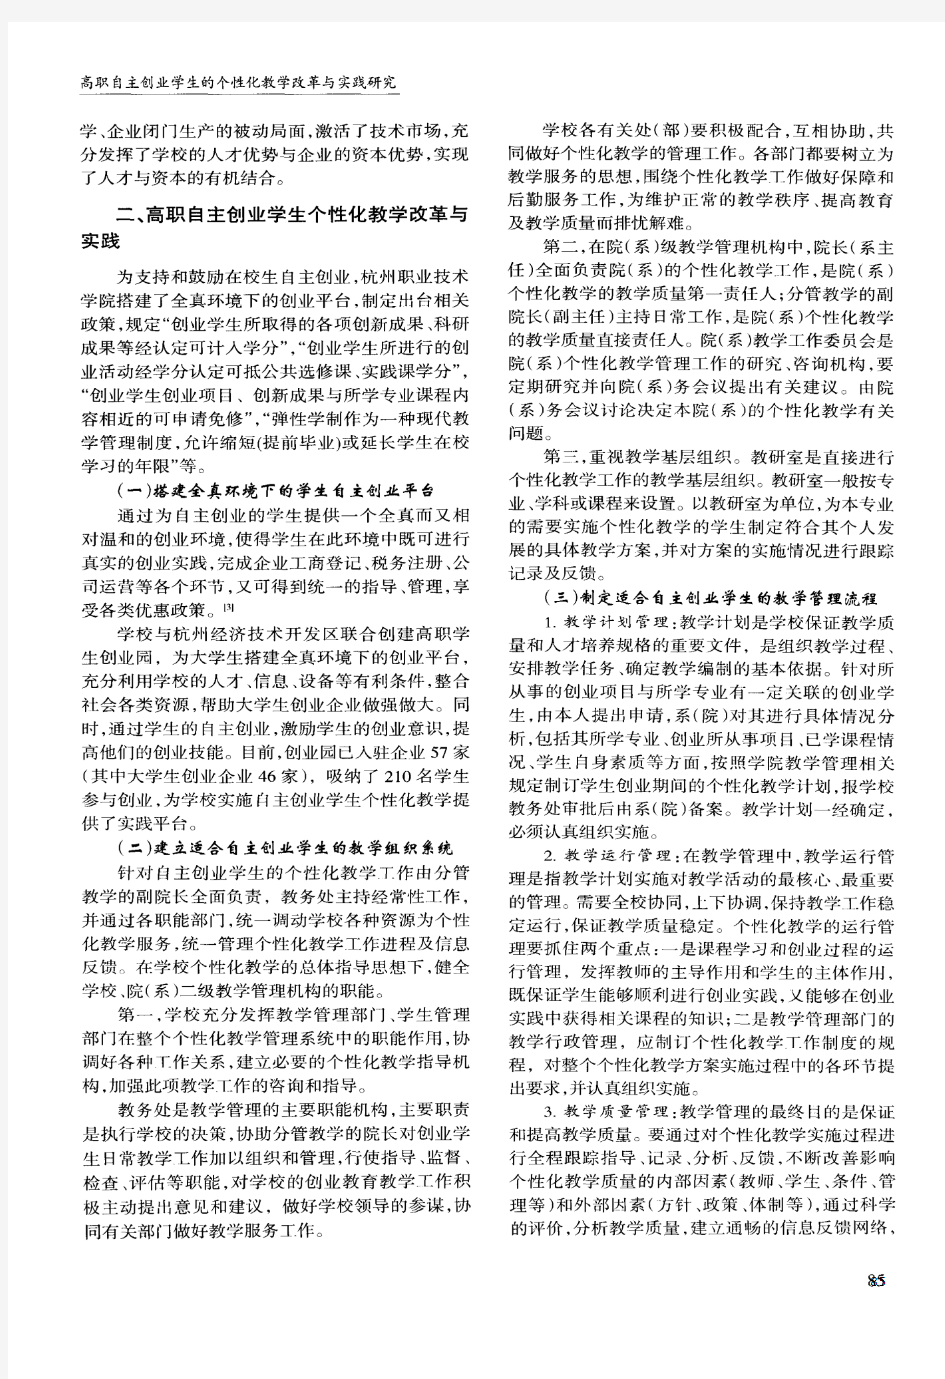 高职自主创业学生的个性化教学改革与实践研究——以杭州职业技术学院为例